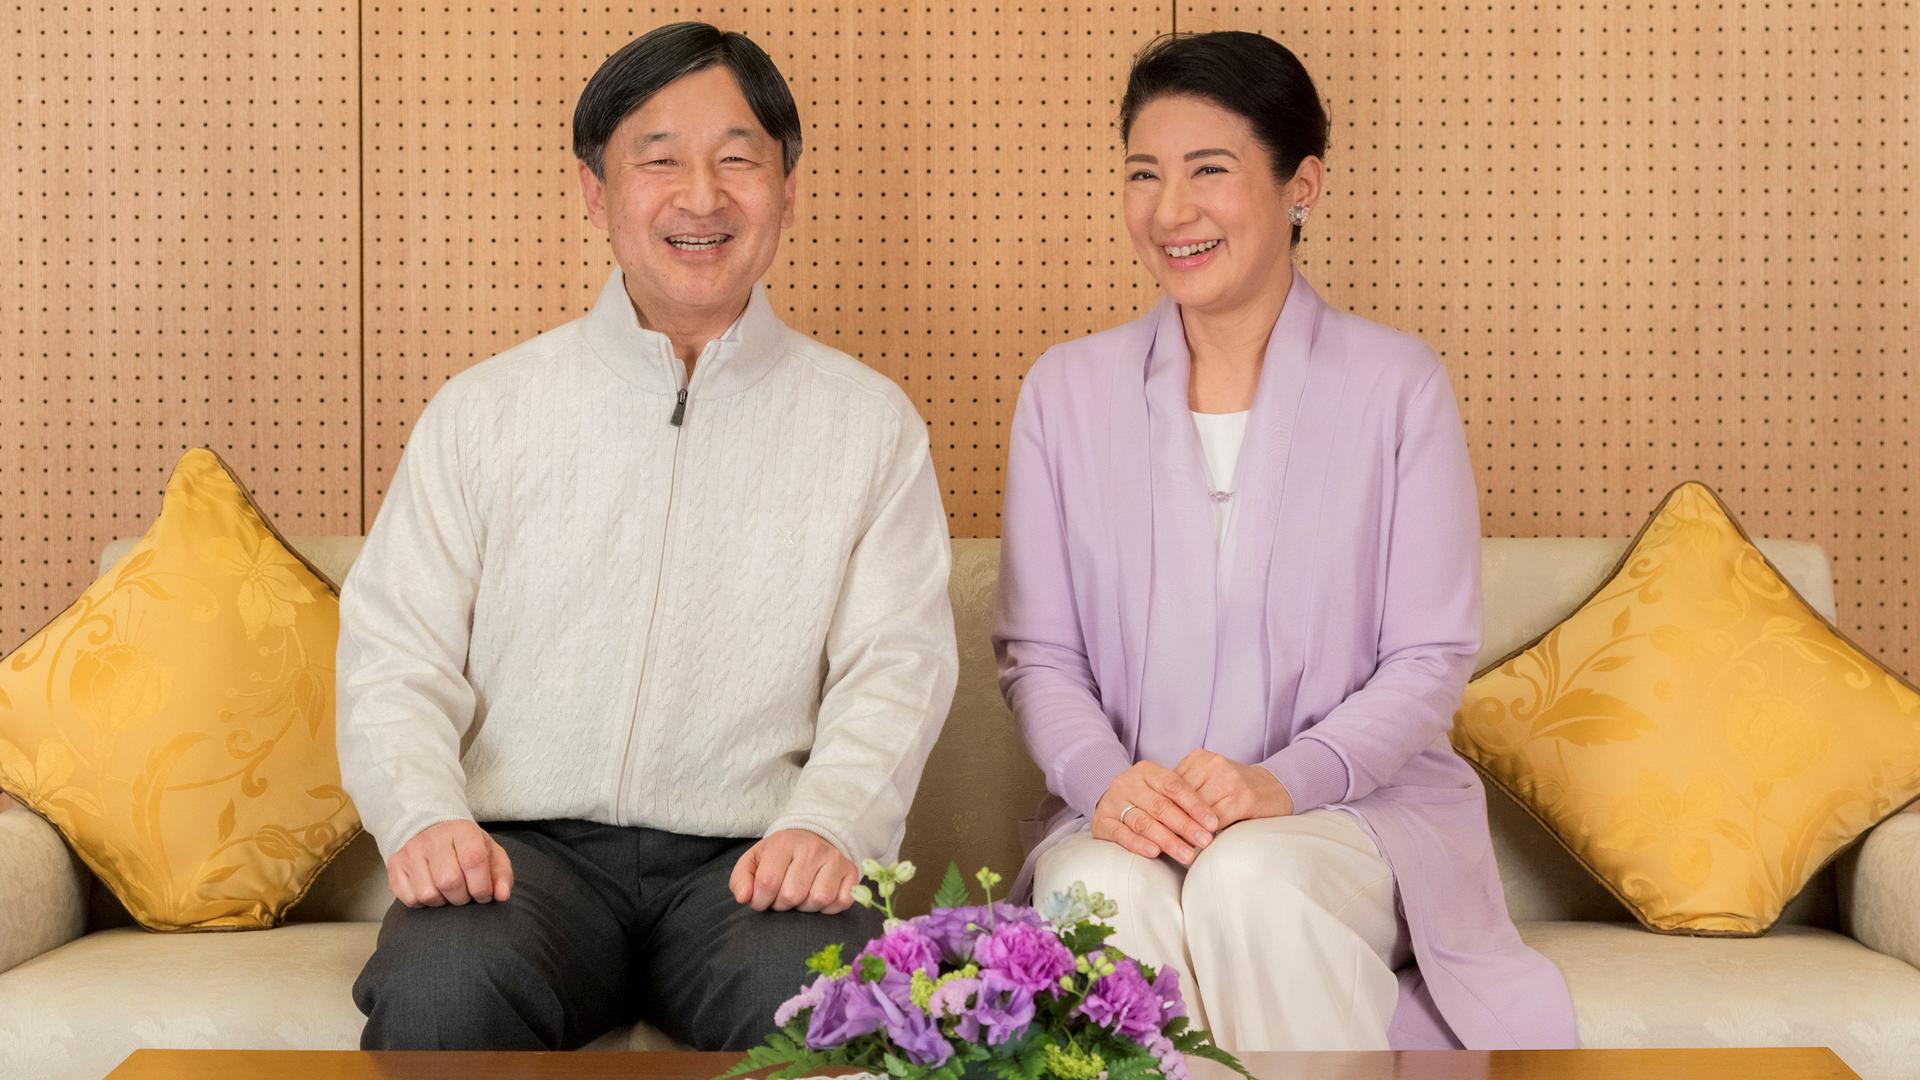 Japan’s Crown Prince Naruhito and Crown Princess Masako